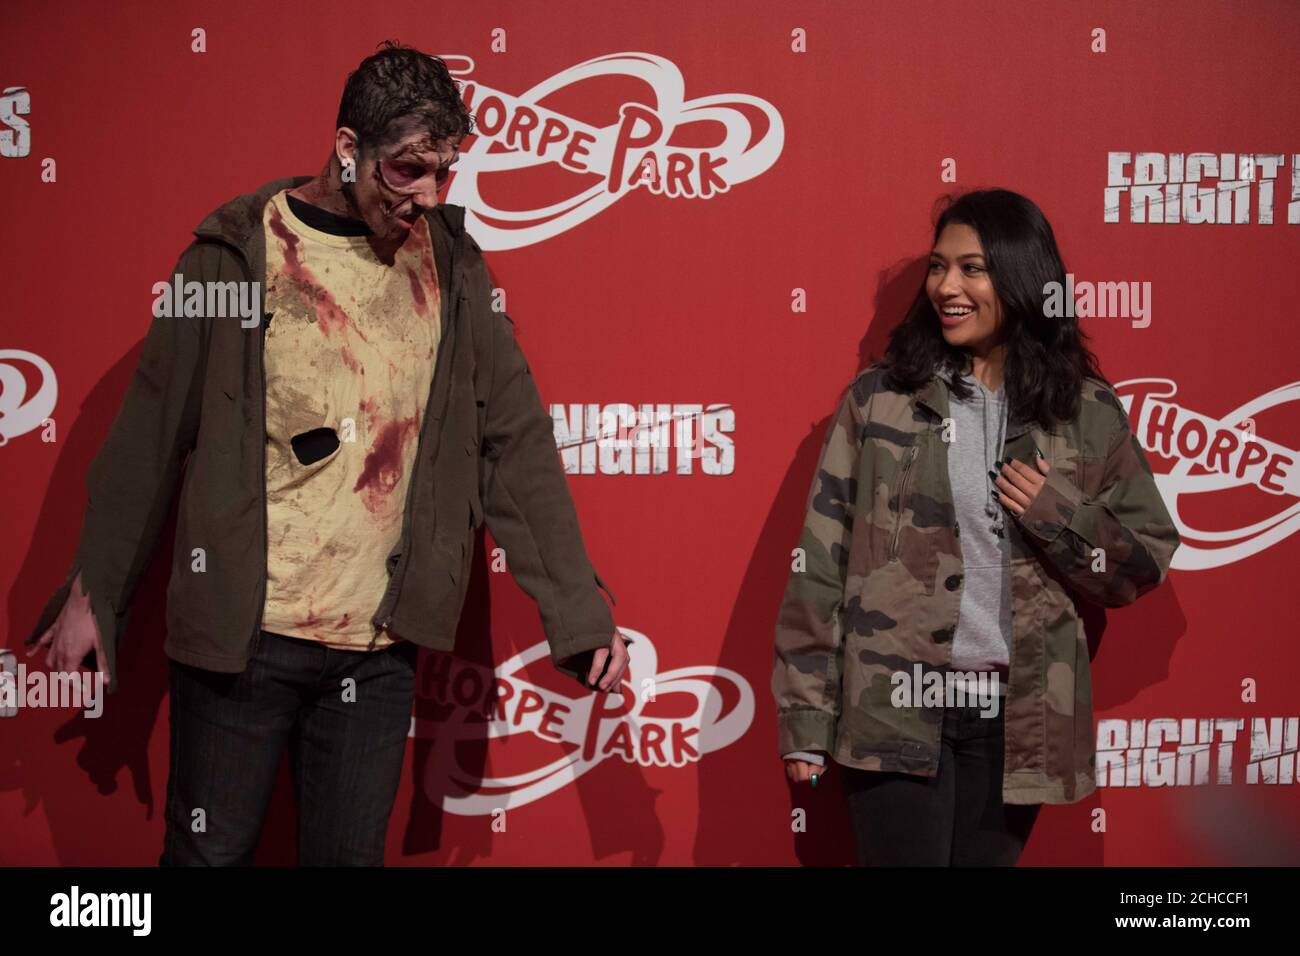 Vanessa White von den Samstagen reagiert auf „Zombies“ beim Start der jährlichen Fright Nights-Saison des THORPE PARK Resorts, die zwei neue Live-Action-Labyrinthe enthält, die von der Fernsehsendung The Walking Dead inspiriert wurden. Stockfoto